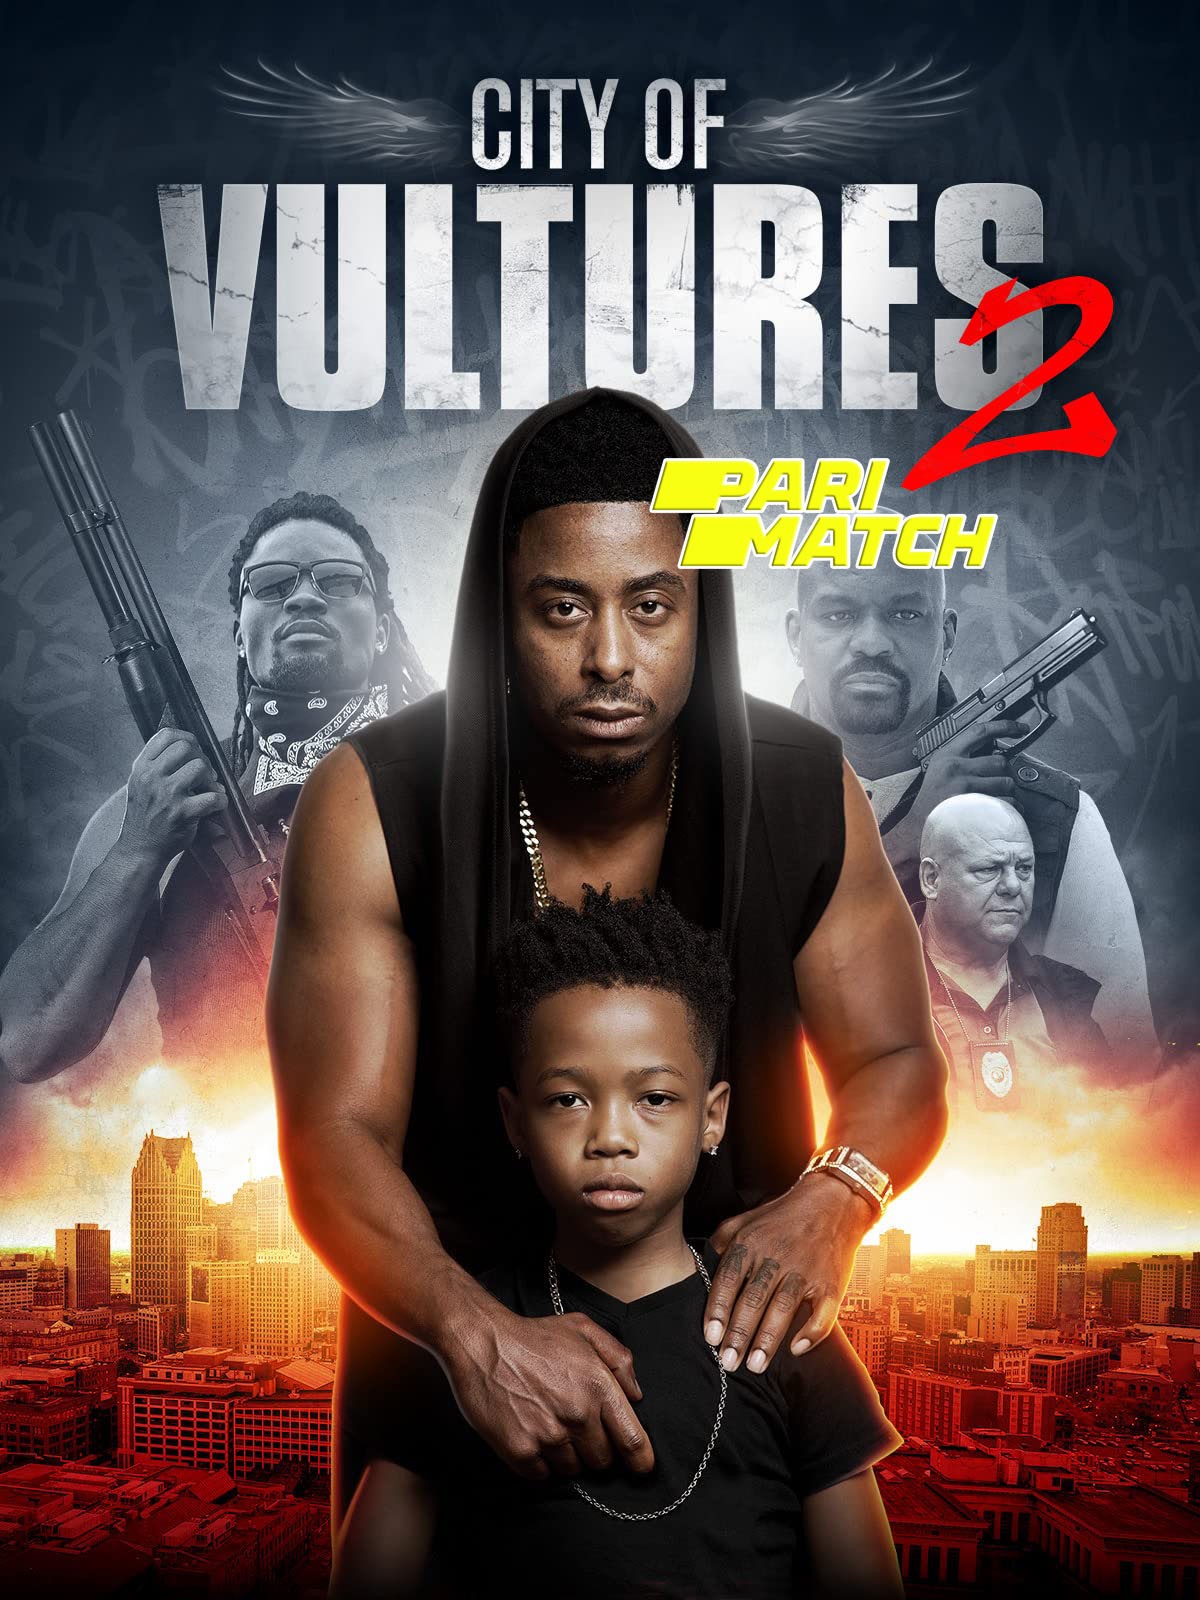 City of Vultures 2 (2022) Bengali Dubbed (VO) [PariMatch] 720p WEBRip 1GB Download